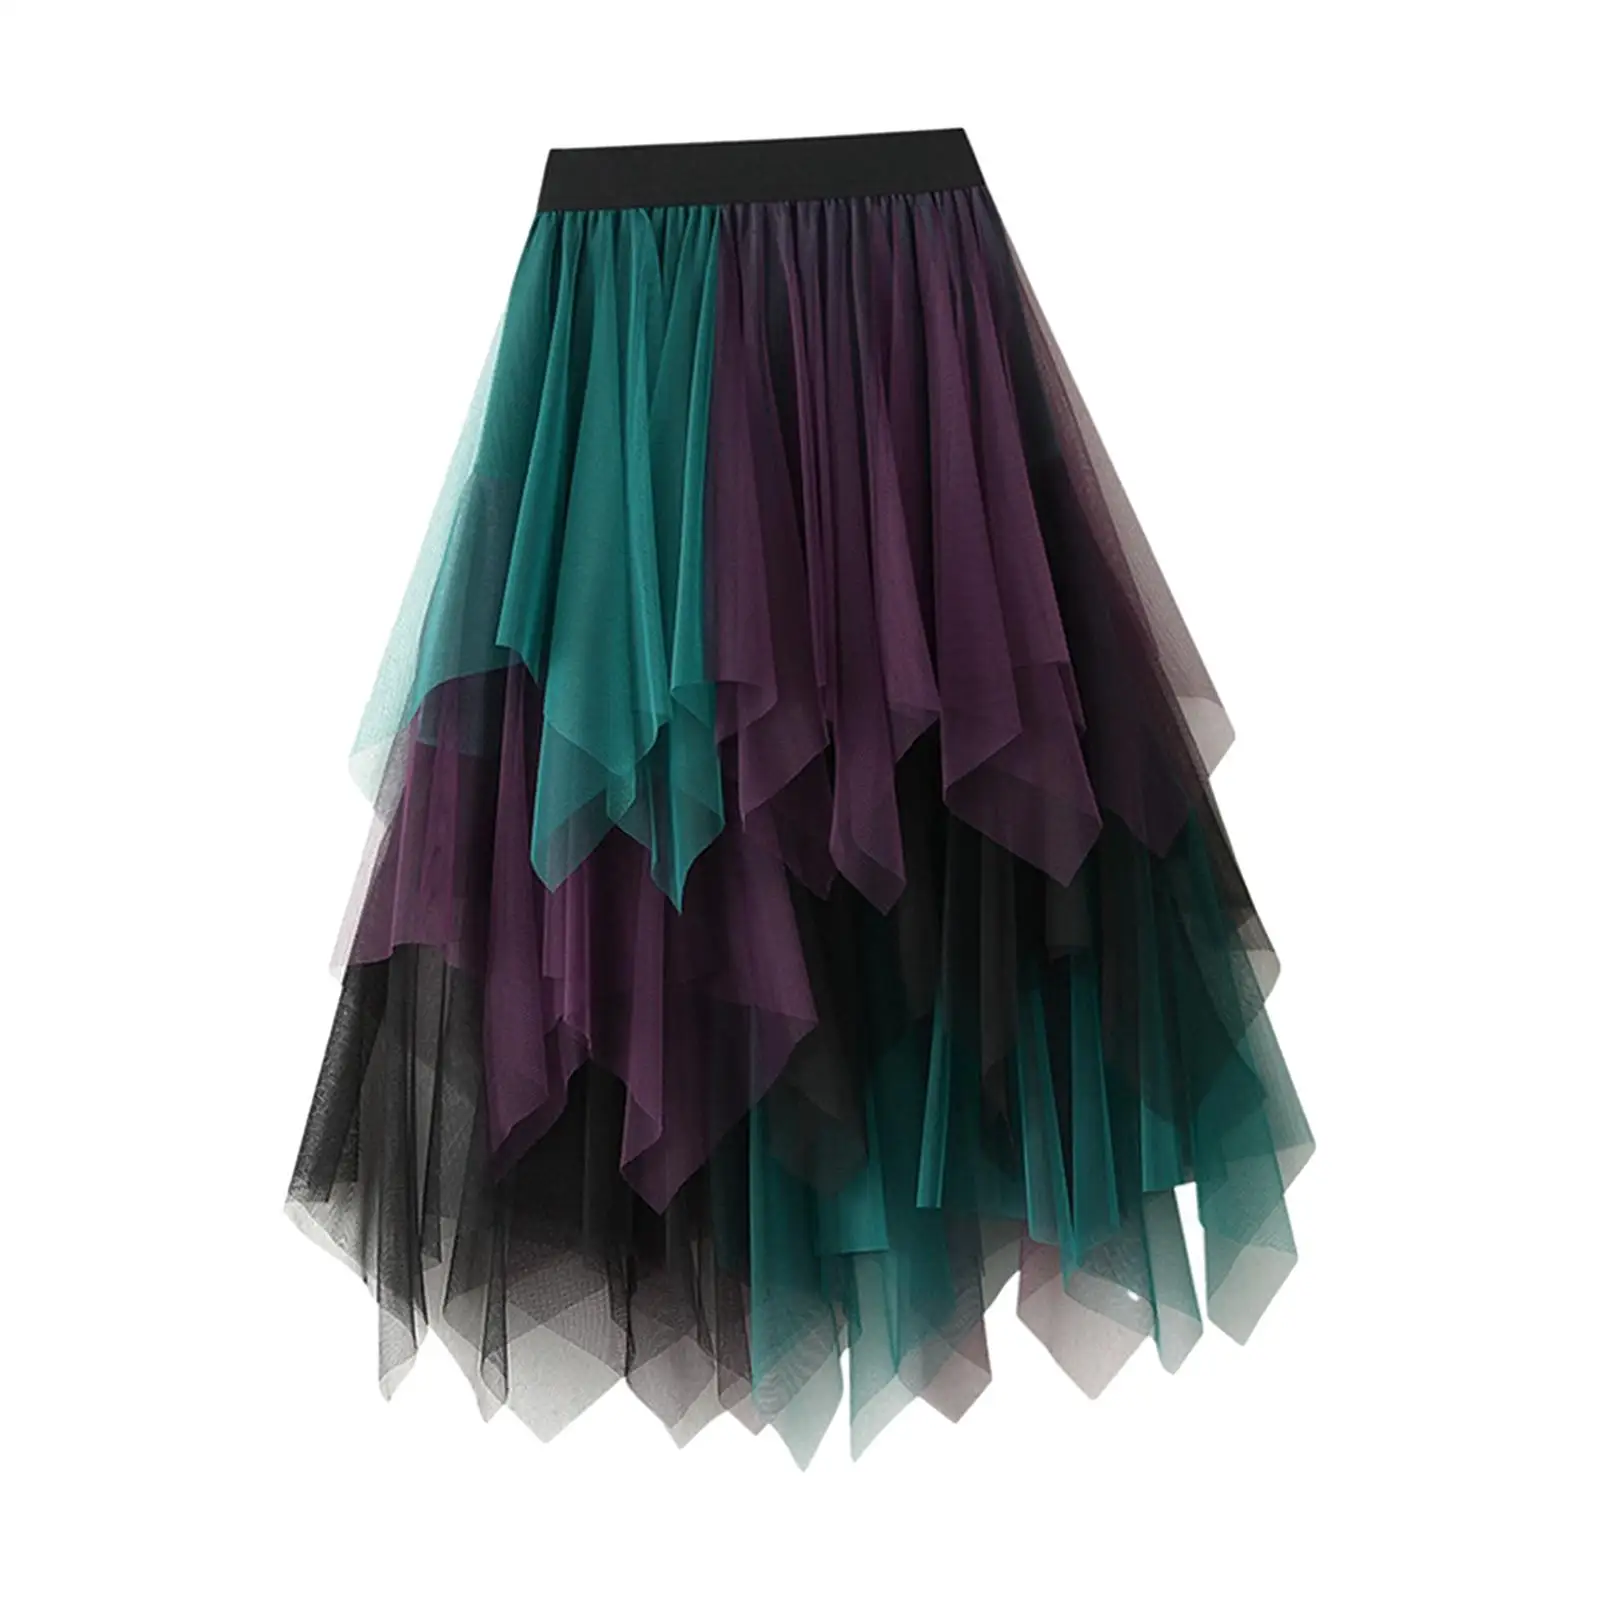 Tulle Skirts for Women Tutu Skirt MIDI Length Trendy Dress Mesh Layered Half Skirt Fairy Skirt for Formal Stage Performance